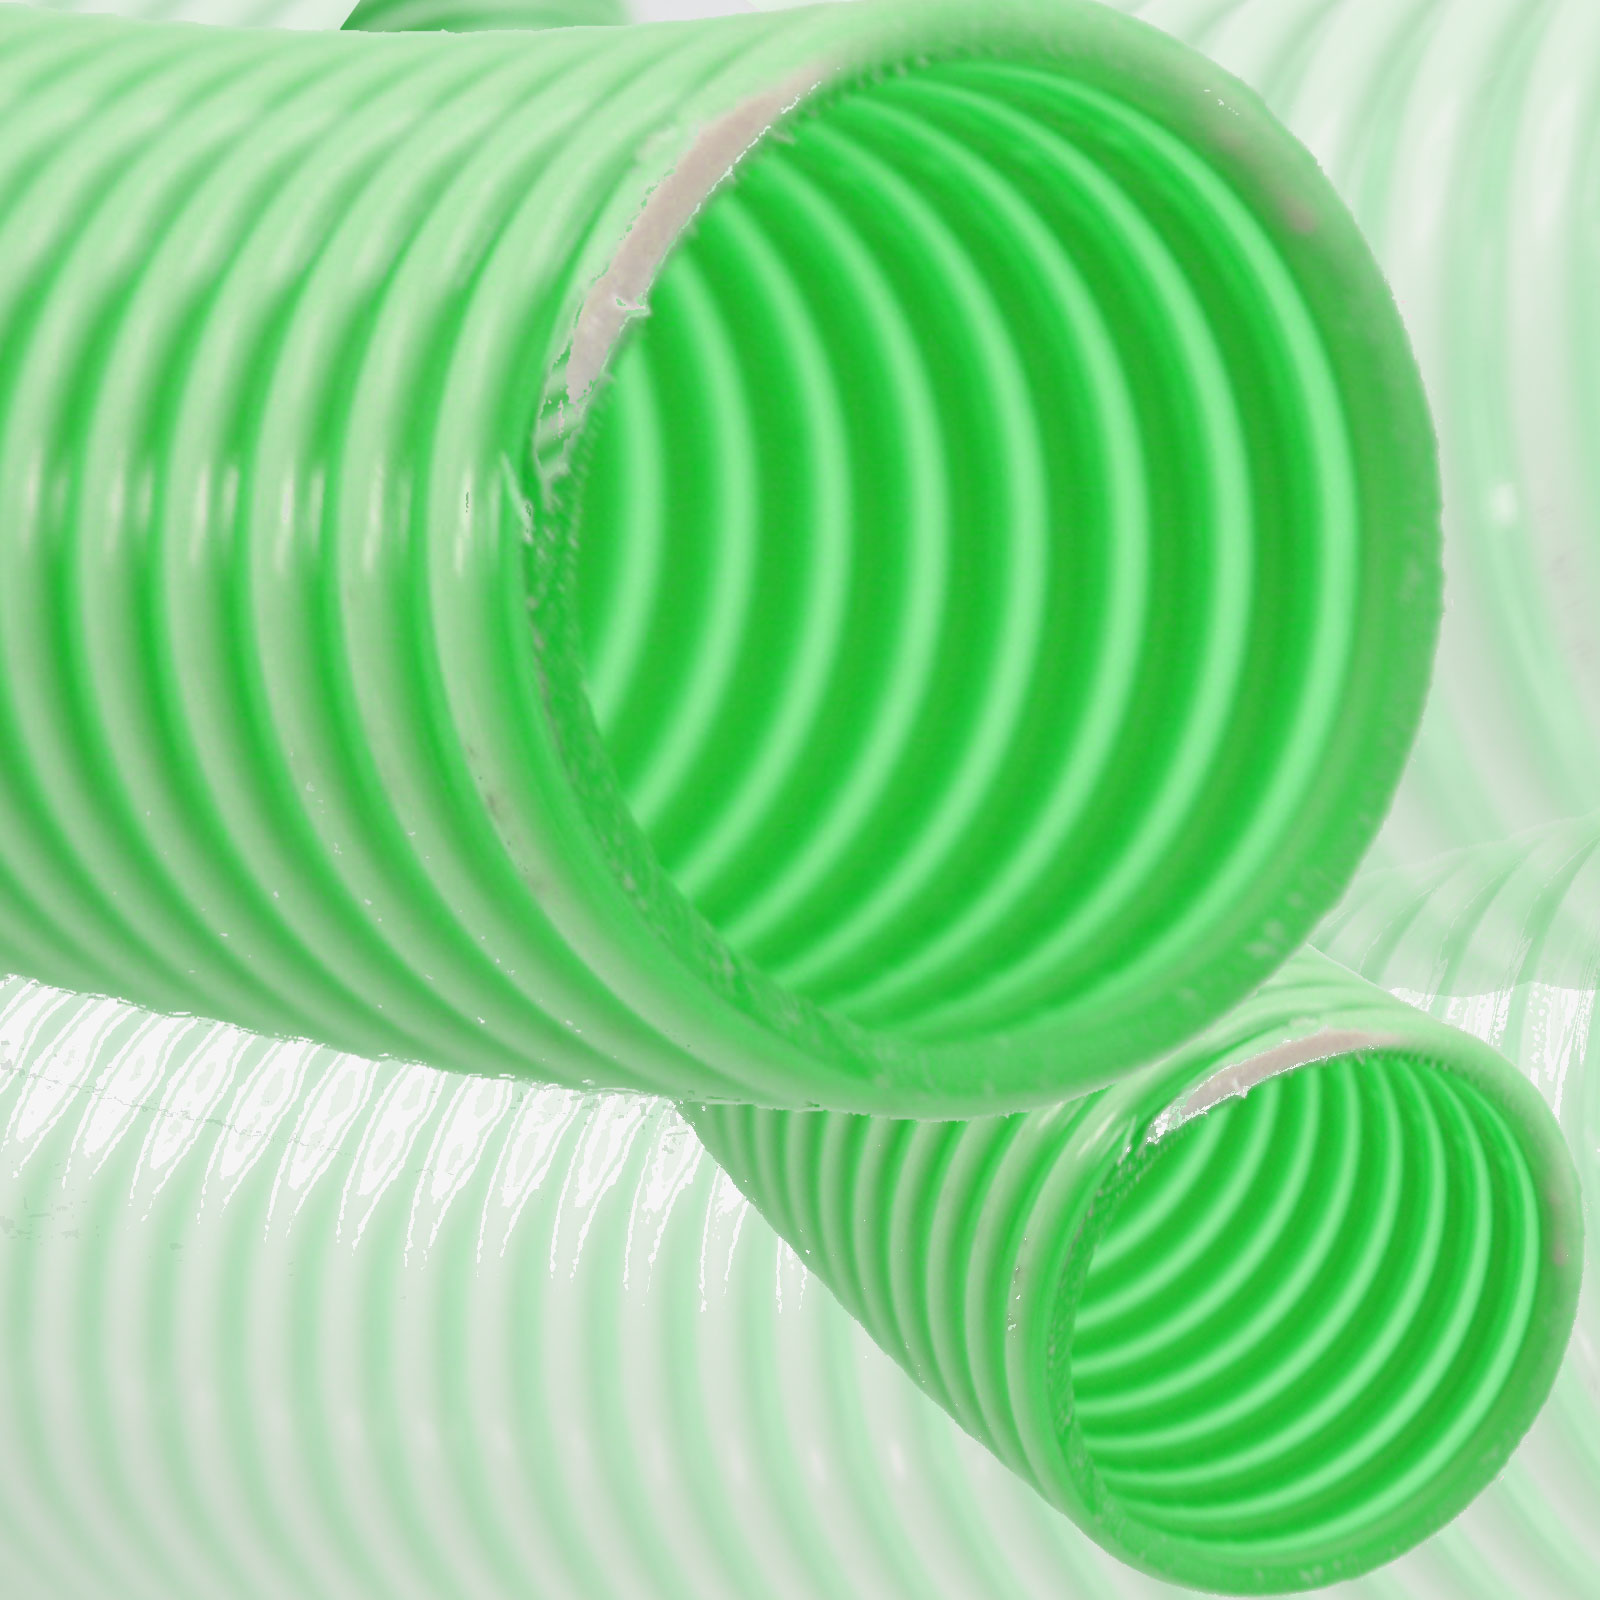 PVC Saugschlauch Spiralschlauch Teich Pumpen Wasser Förder Druck Schlauch Grün 